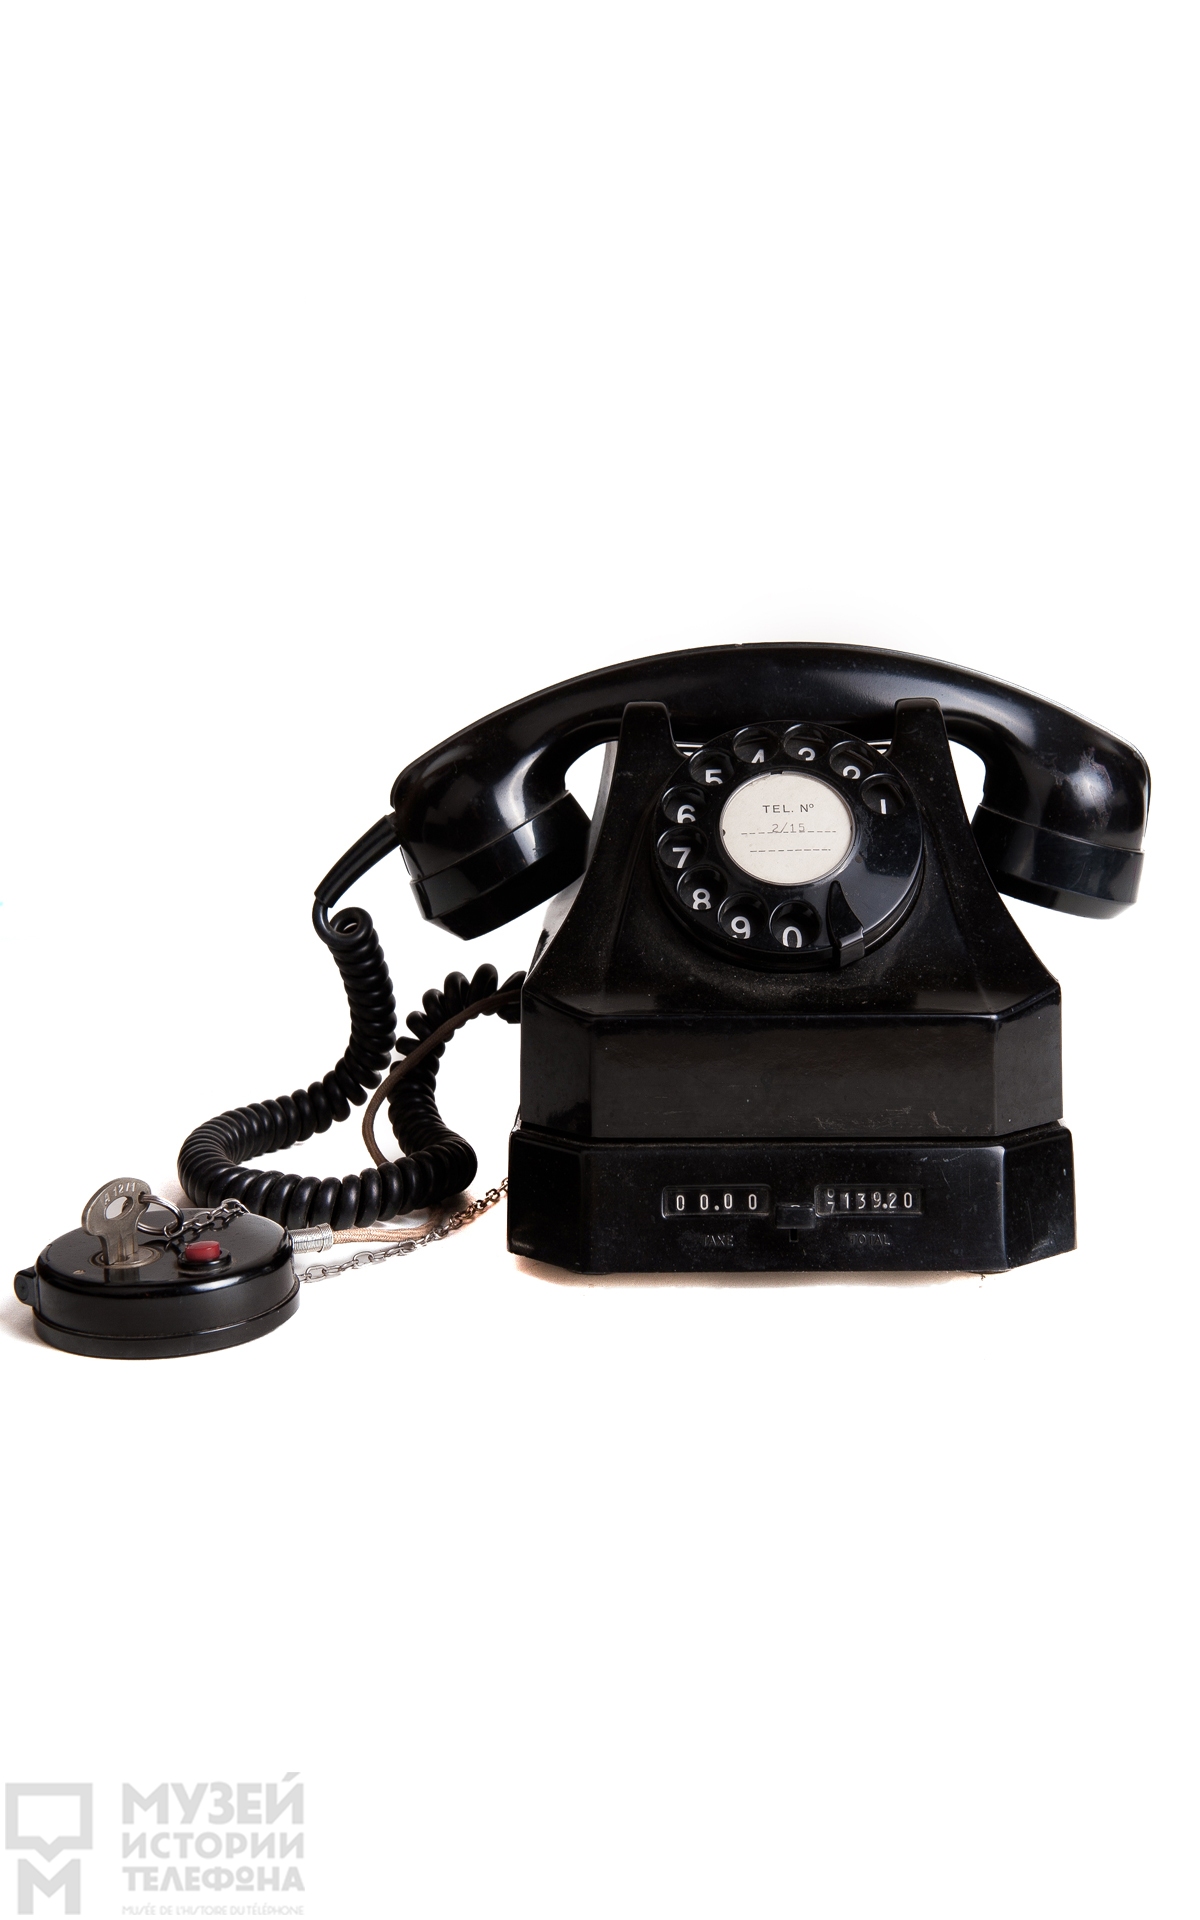 Настольные телефонные аппараты системы АТС с блокиратором и счетчиком стоимости разговора, модель Télétaxe